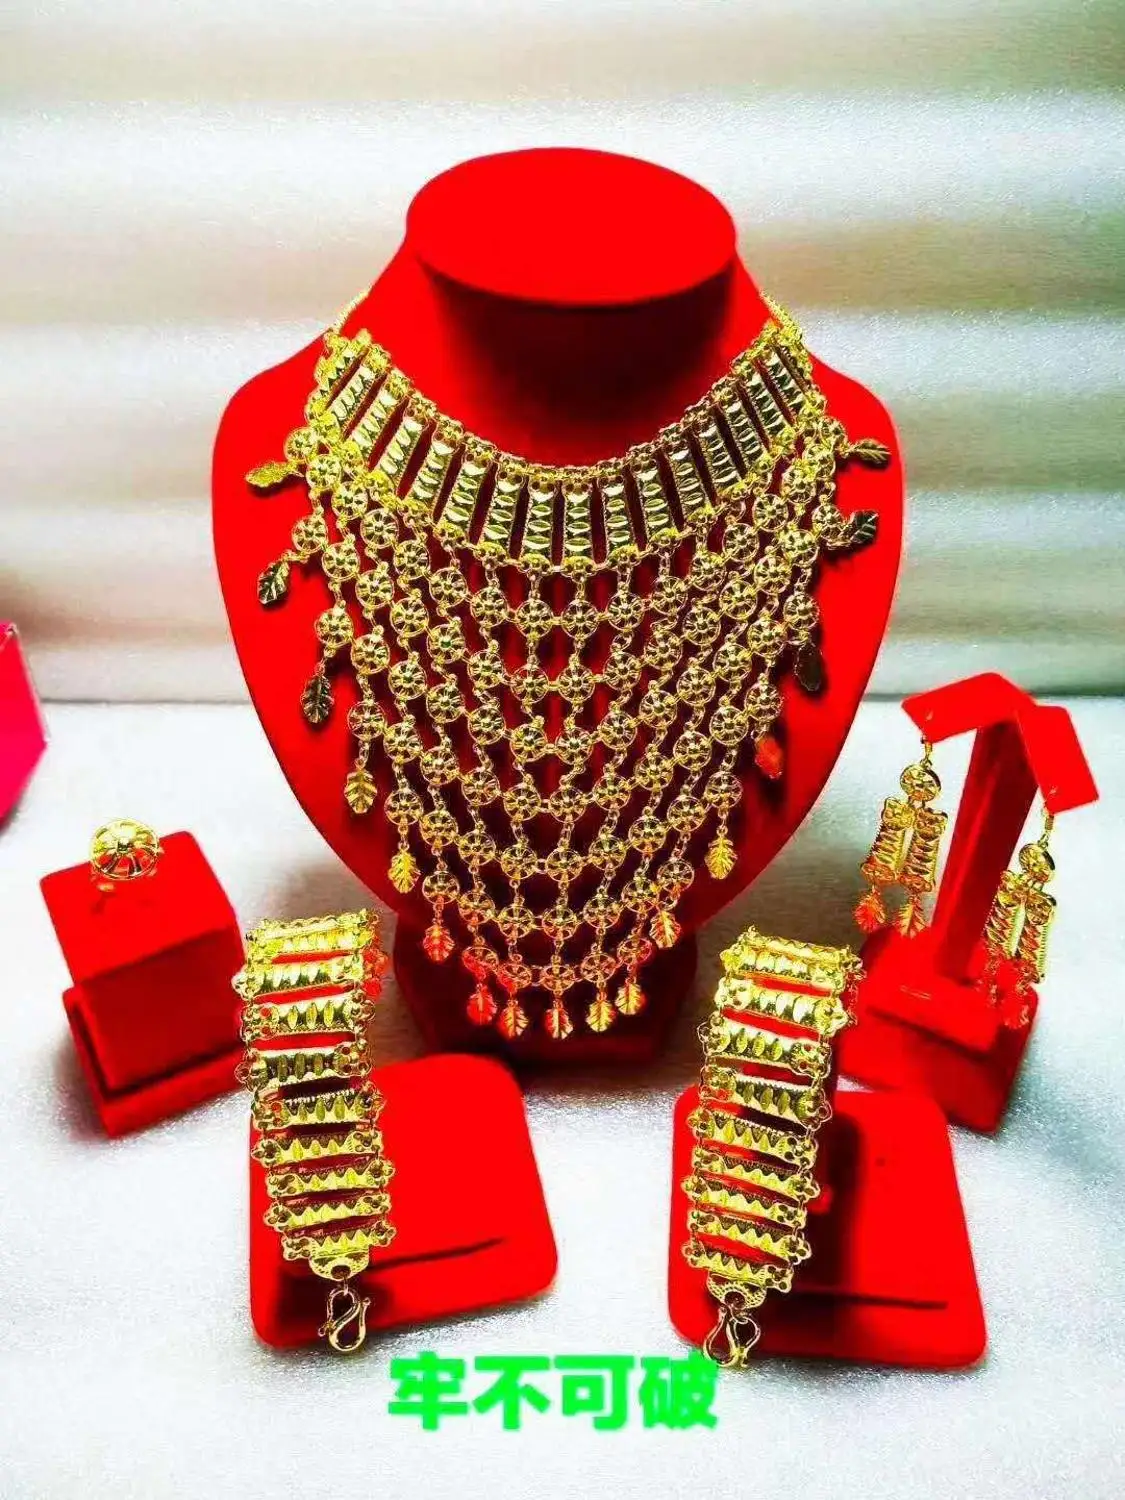 Yulaili золото-цвет роскошный атмосферный дизайн ожерелье браслет серьги кольцо Свадебные Ювелирные наборы окно ювелирных изделий дисплей